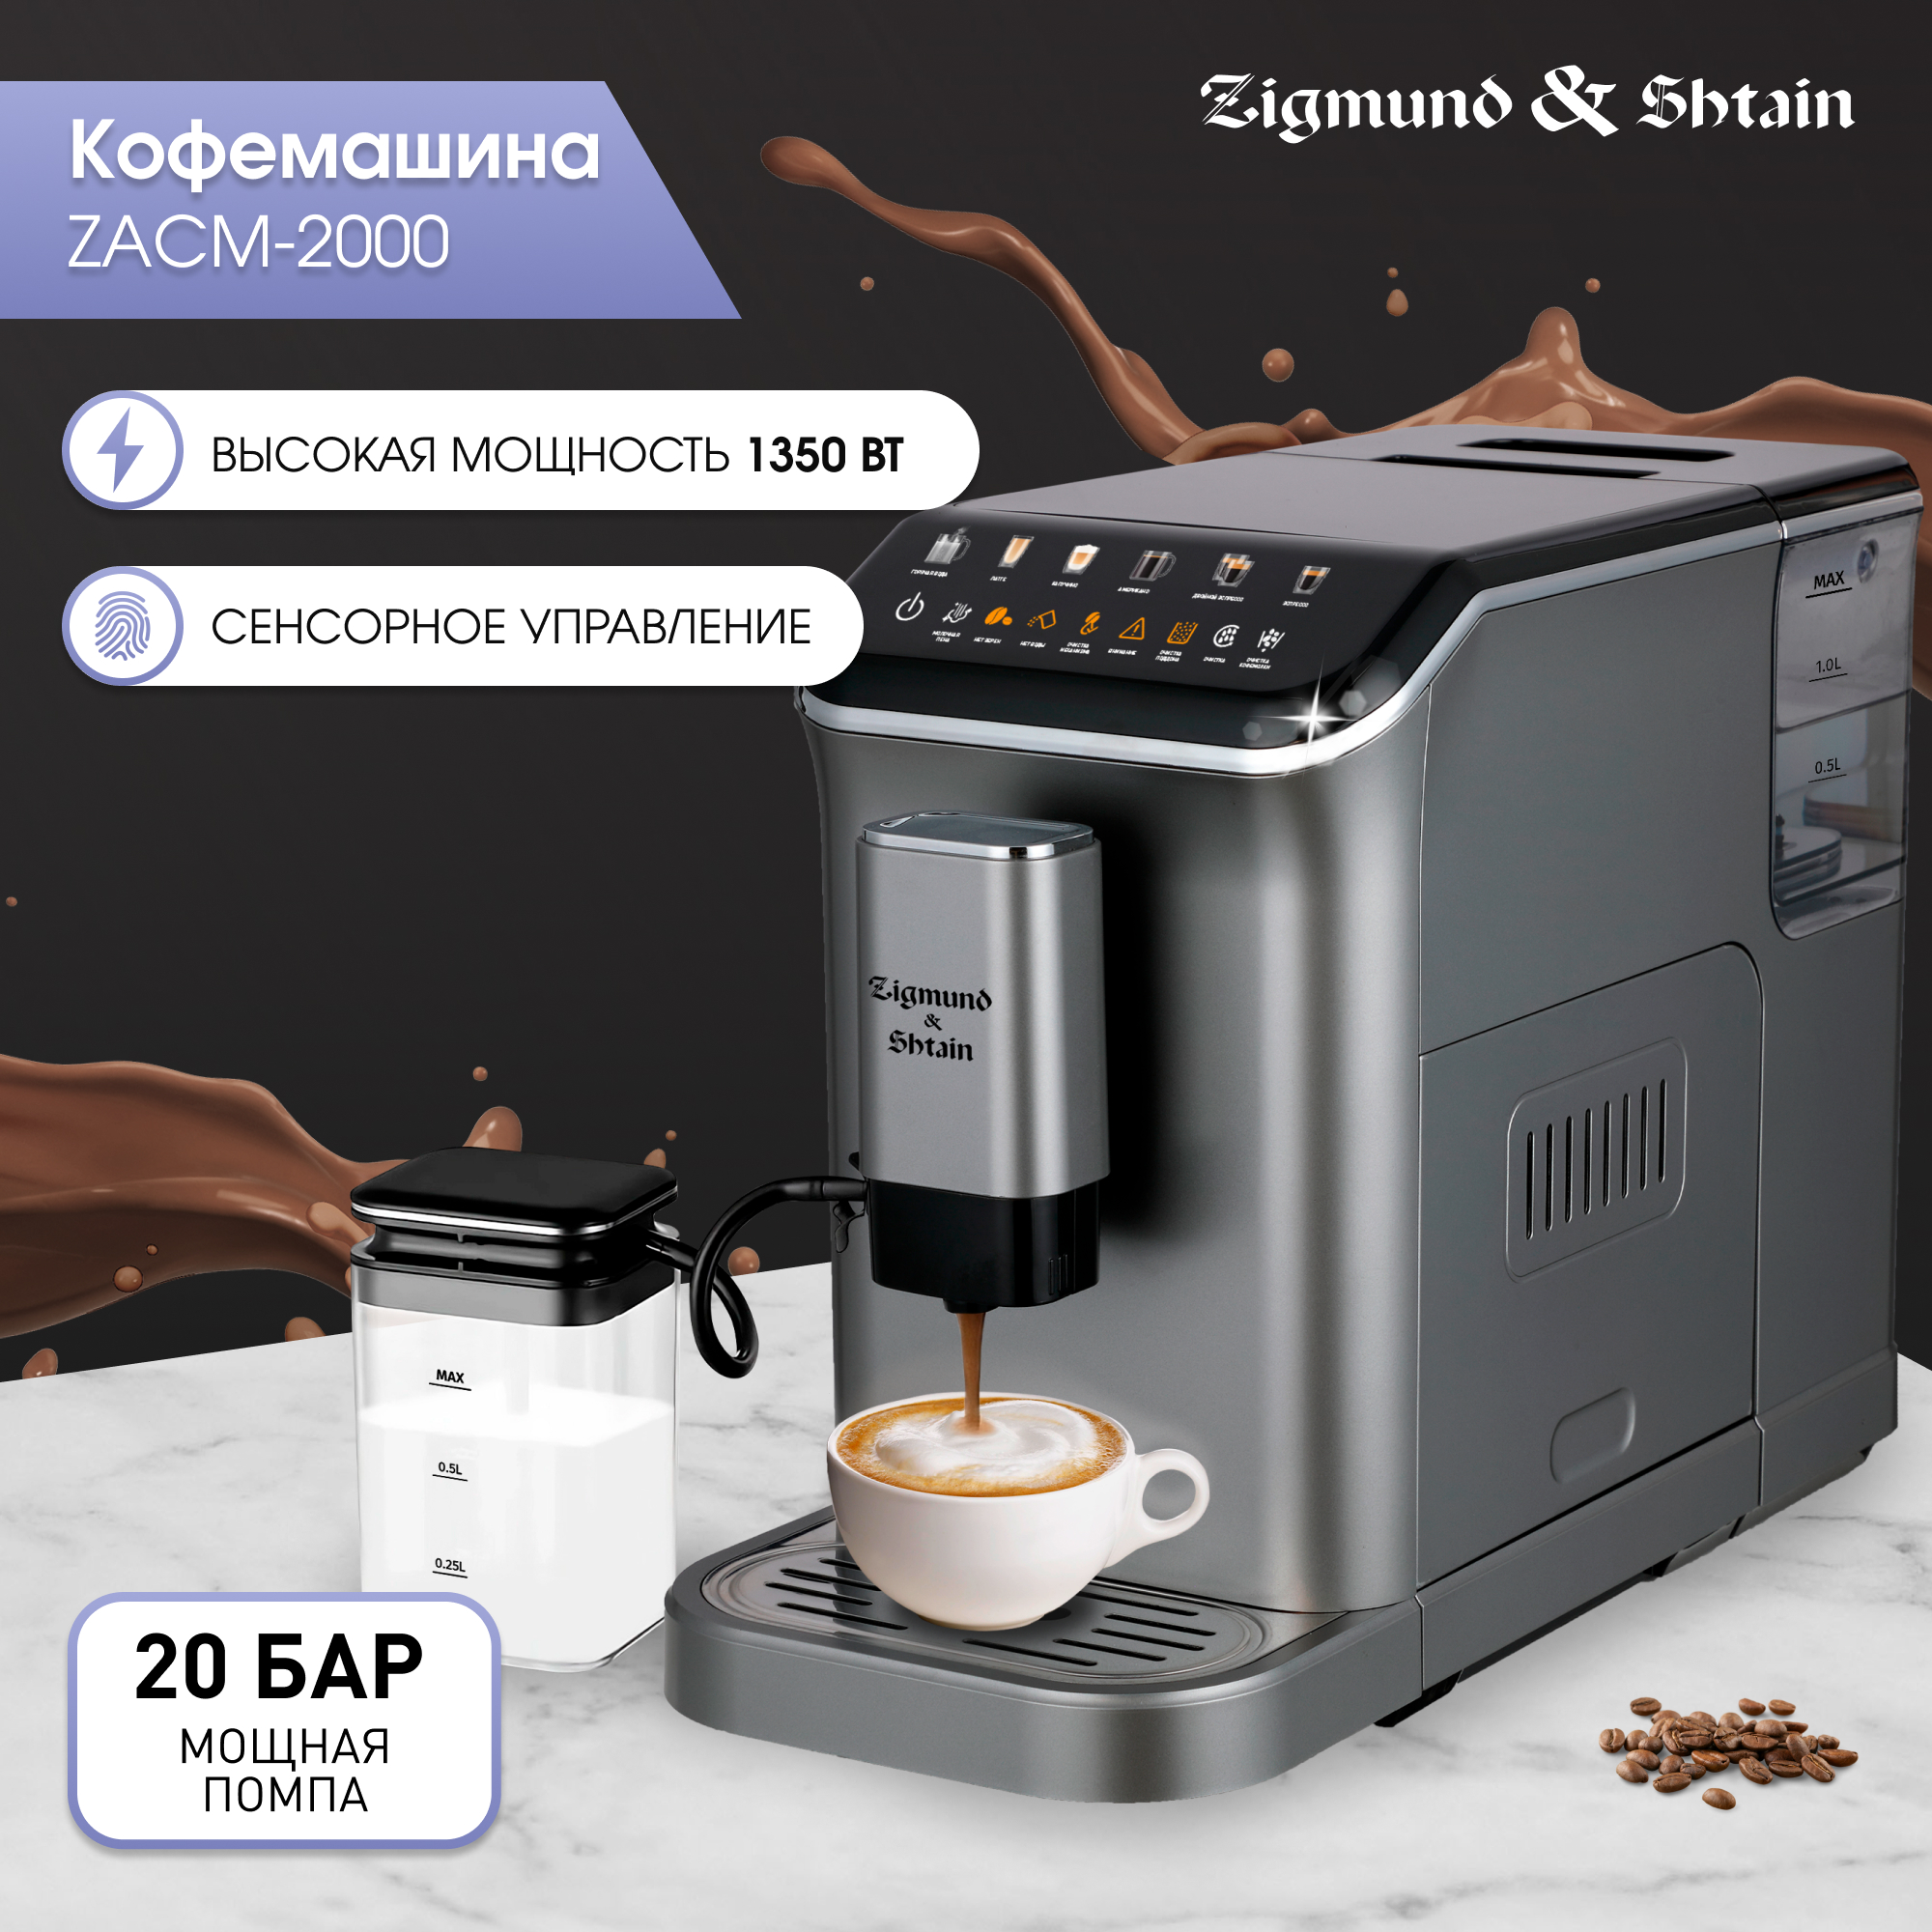 Кофемашина автоматическая Zigmund & Shtain ZACM-2000 серая кофемашина автоматическая red solution rcm 1540 серая